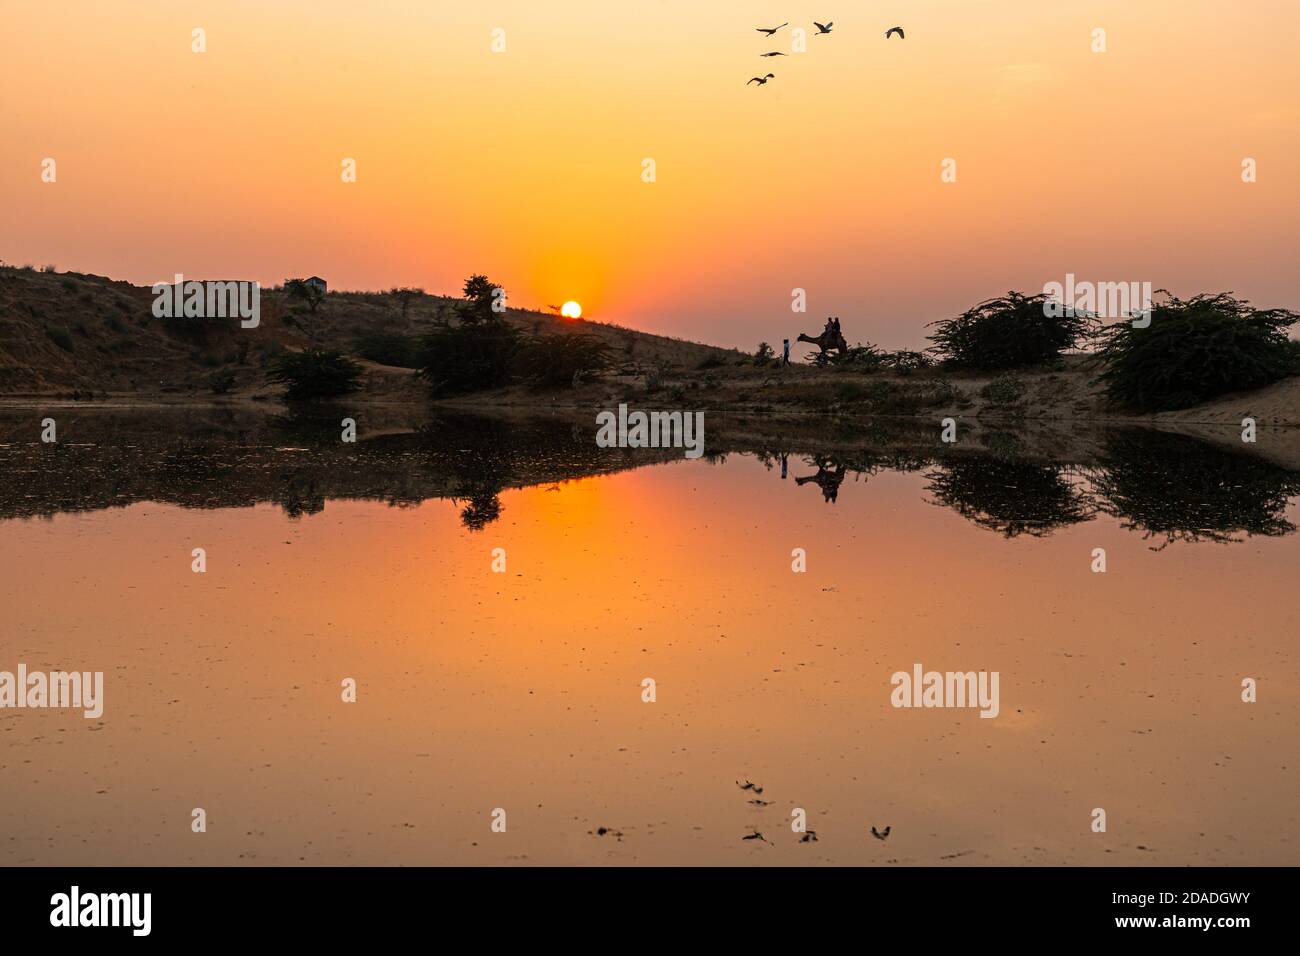 vista di un bellissimo tramonto, gli uccelli stanno volando e riflesso di cart cammello Foto Stock